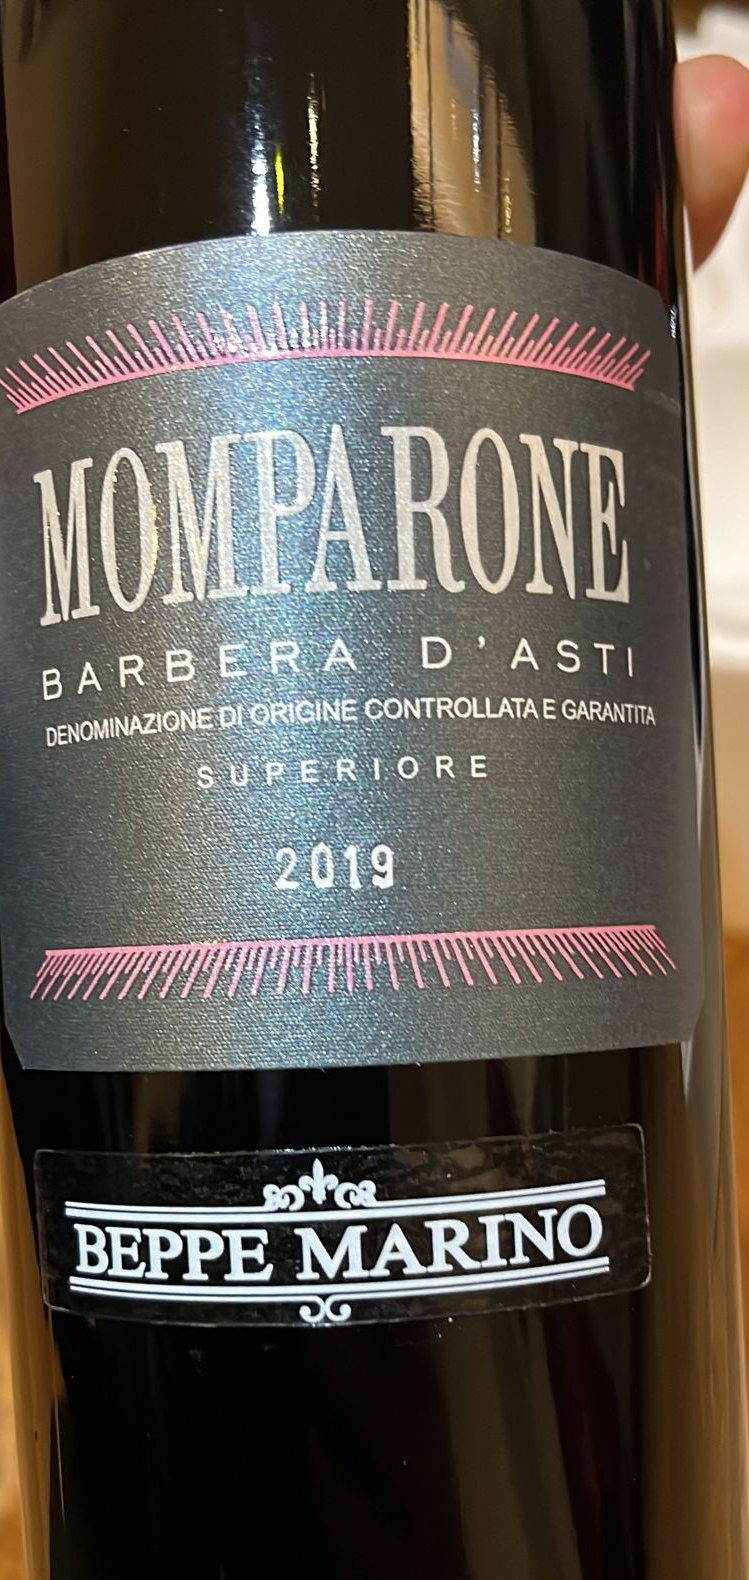 Momparone Barbera D’Asti Superiore DOCG 2019, articolo: Beppe Marino una realtà piemontese dal 1972 vini di qualità